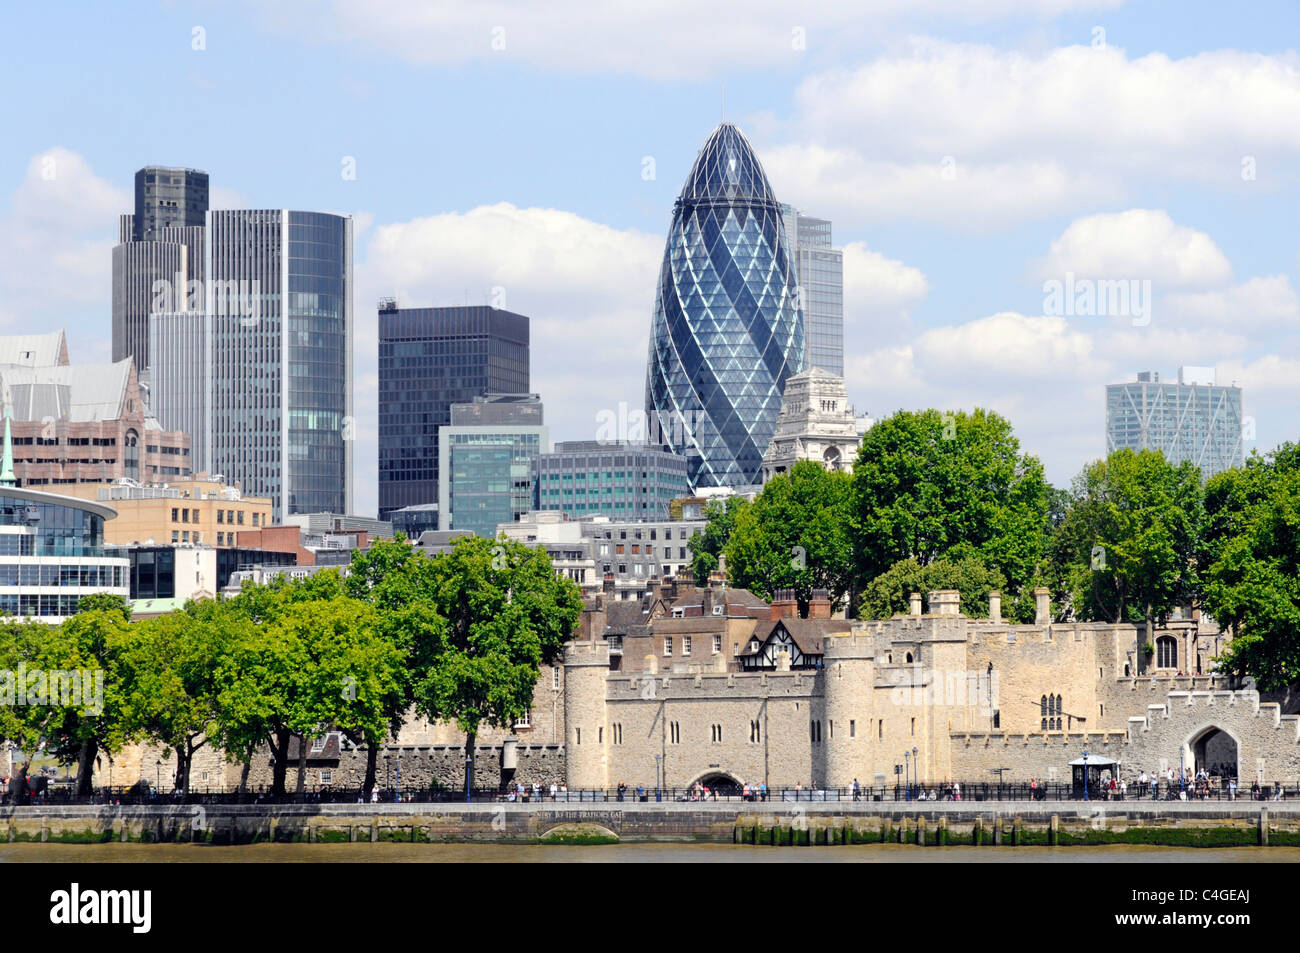 Paysage urbain au bord de la rivière Tour de Londres et gratte-ciel historique gratte-ciel bâtiments de bureaux et Gherkin dans la ville de Londres Angleterre Royaume-Uni Banque D'Images